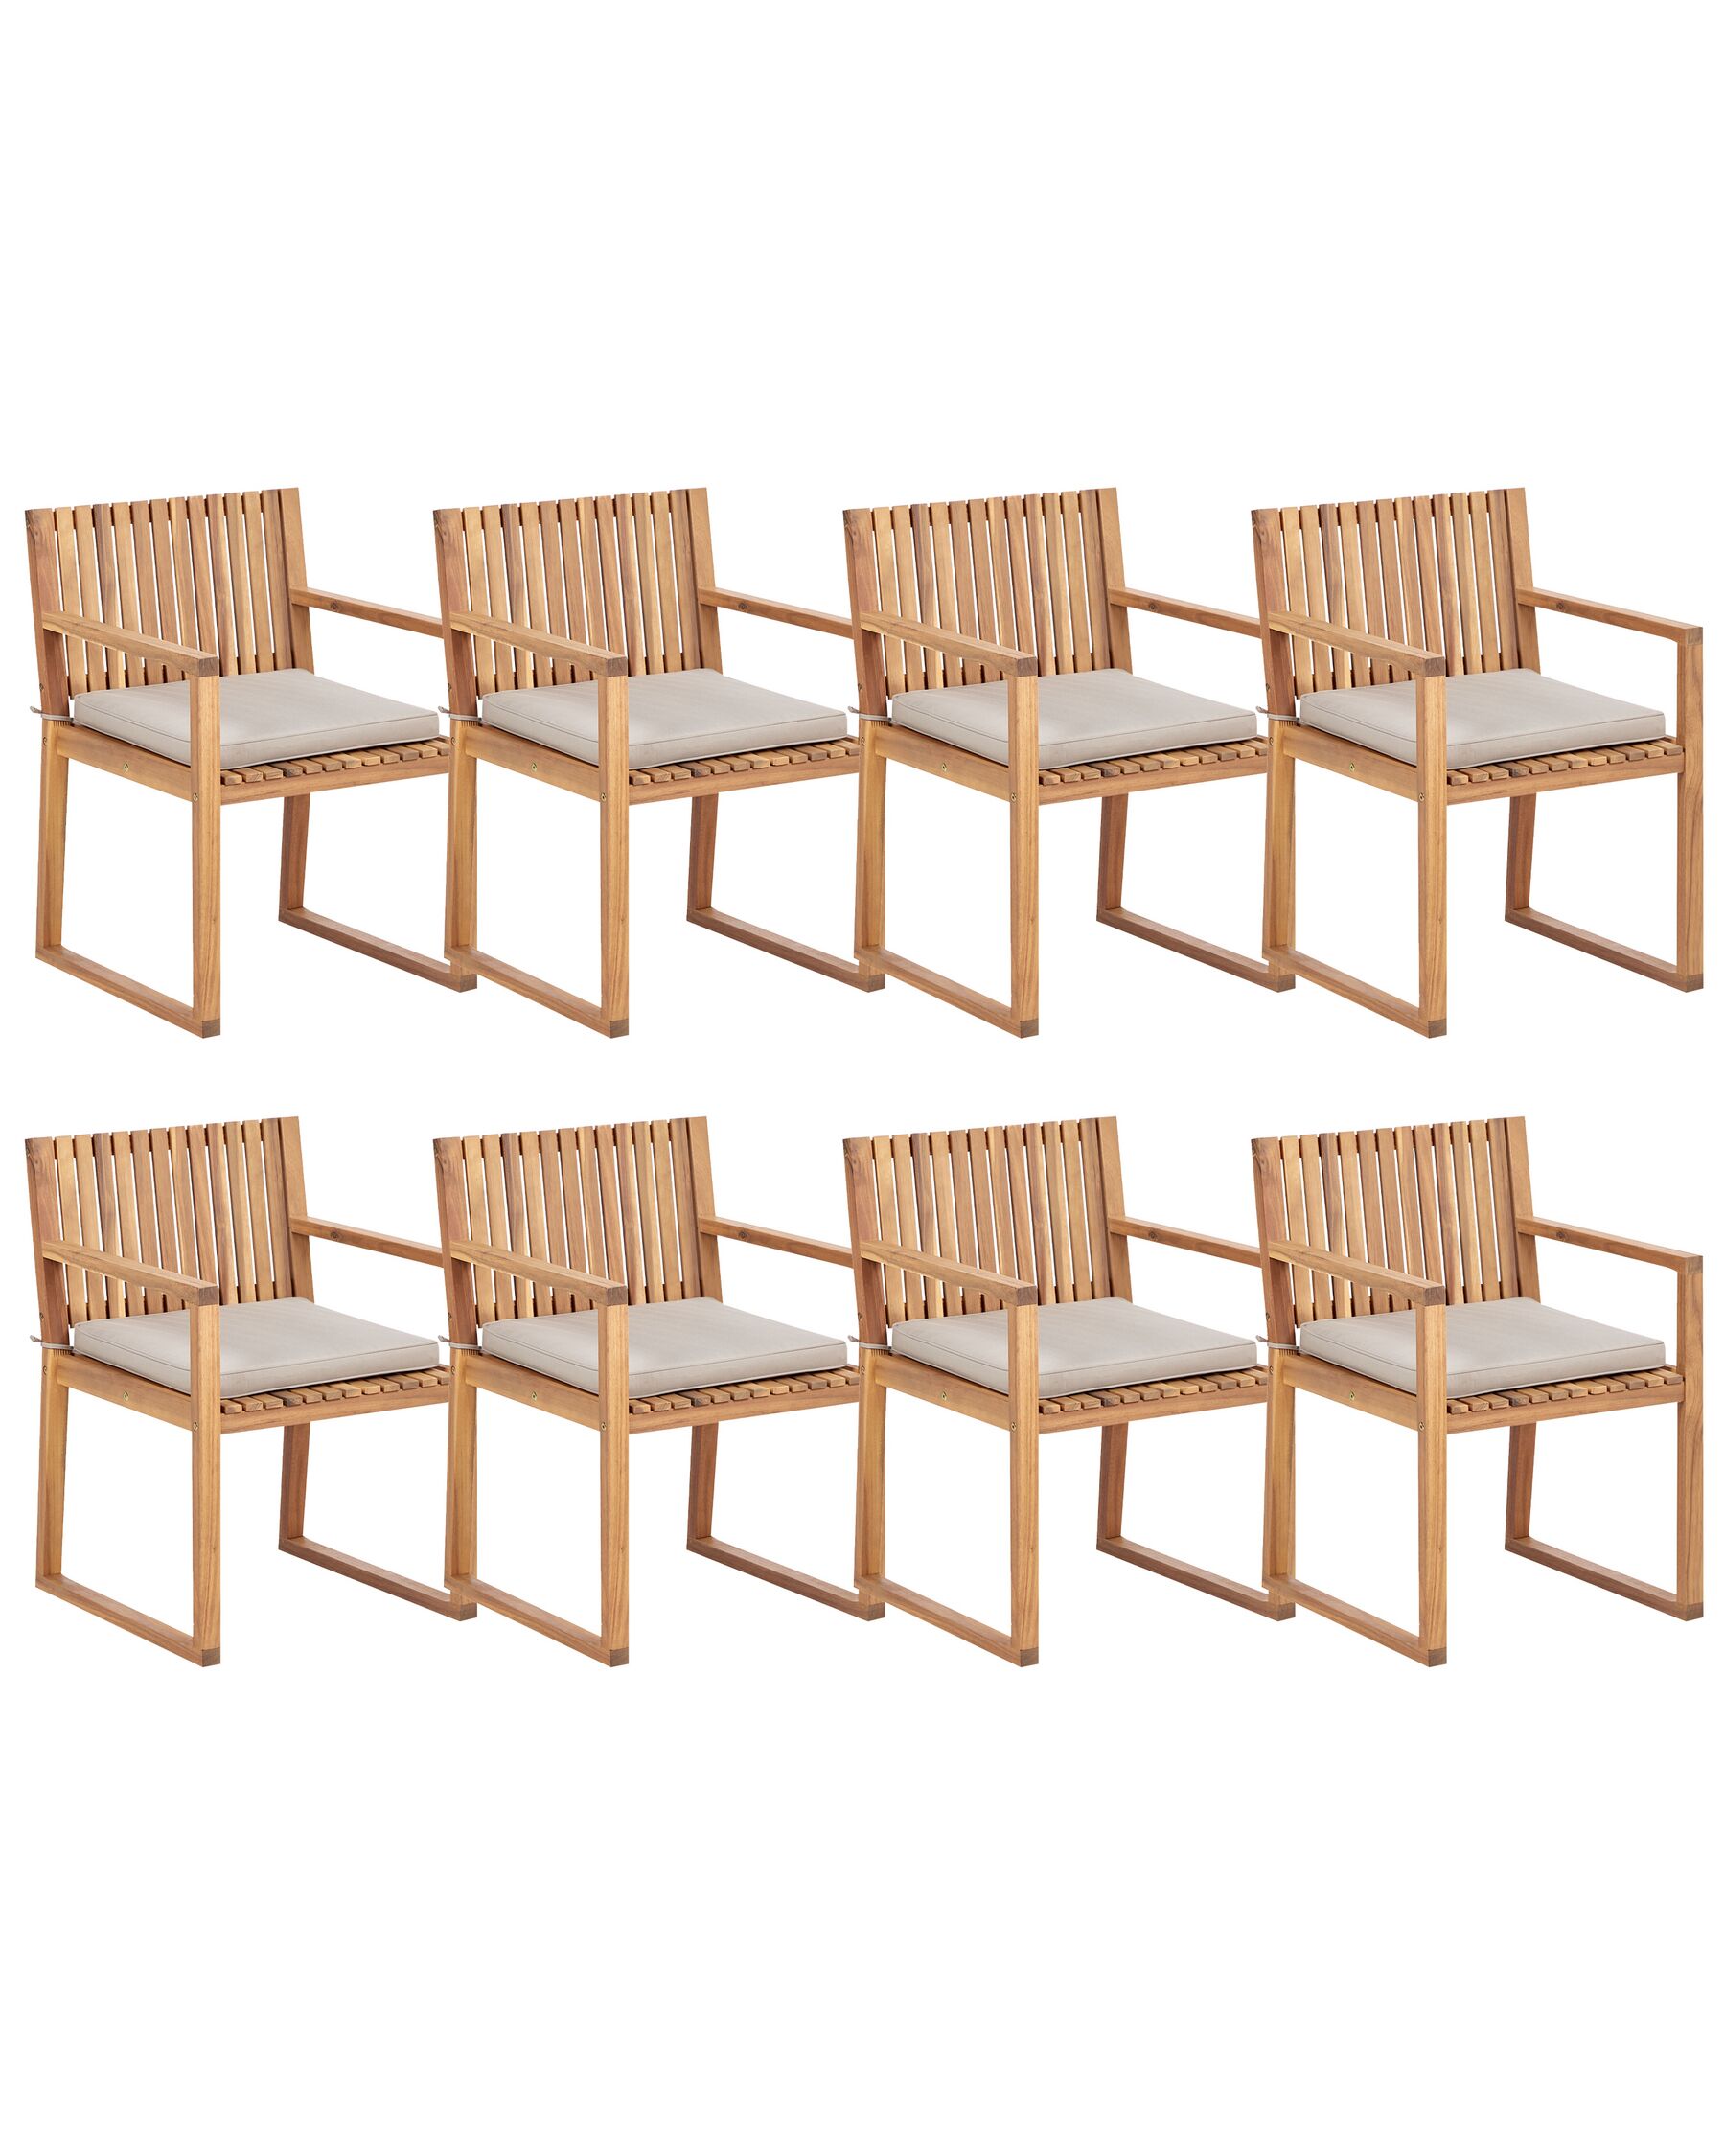 Sada 8 certifikovaných zahradních jídelních židlí z akátového dřeva s polštáři v barvě taupe SASSARI II_923852